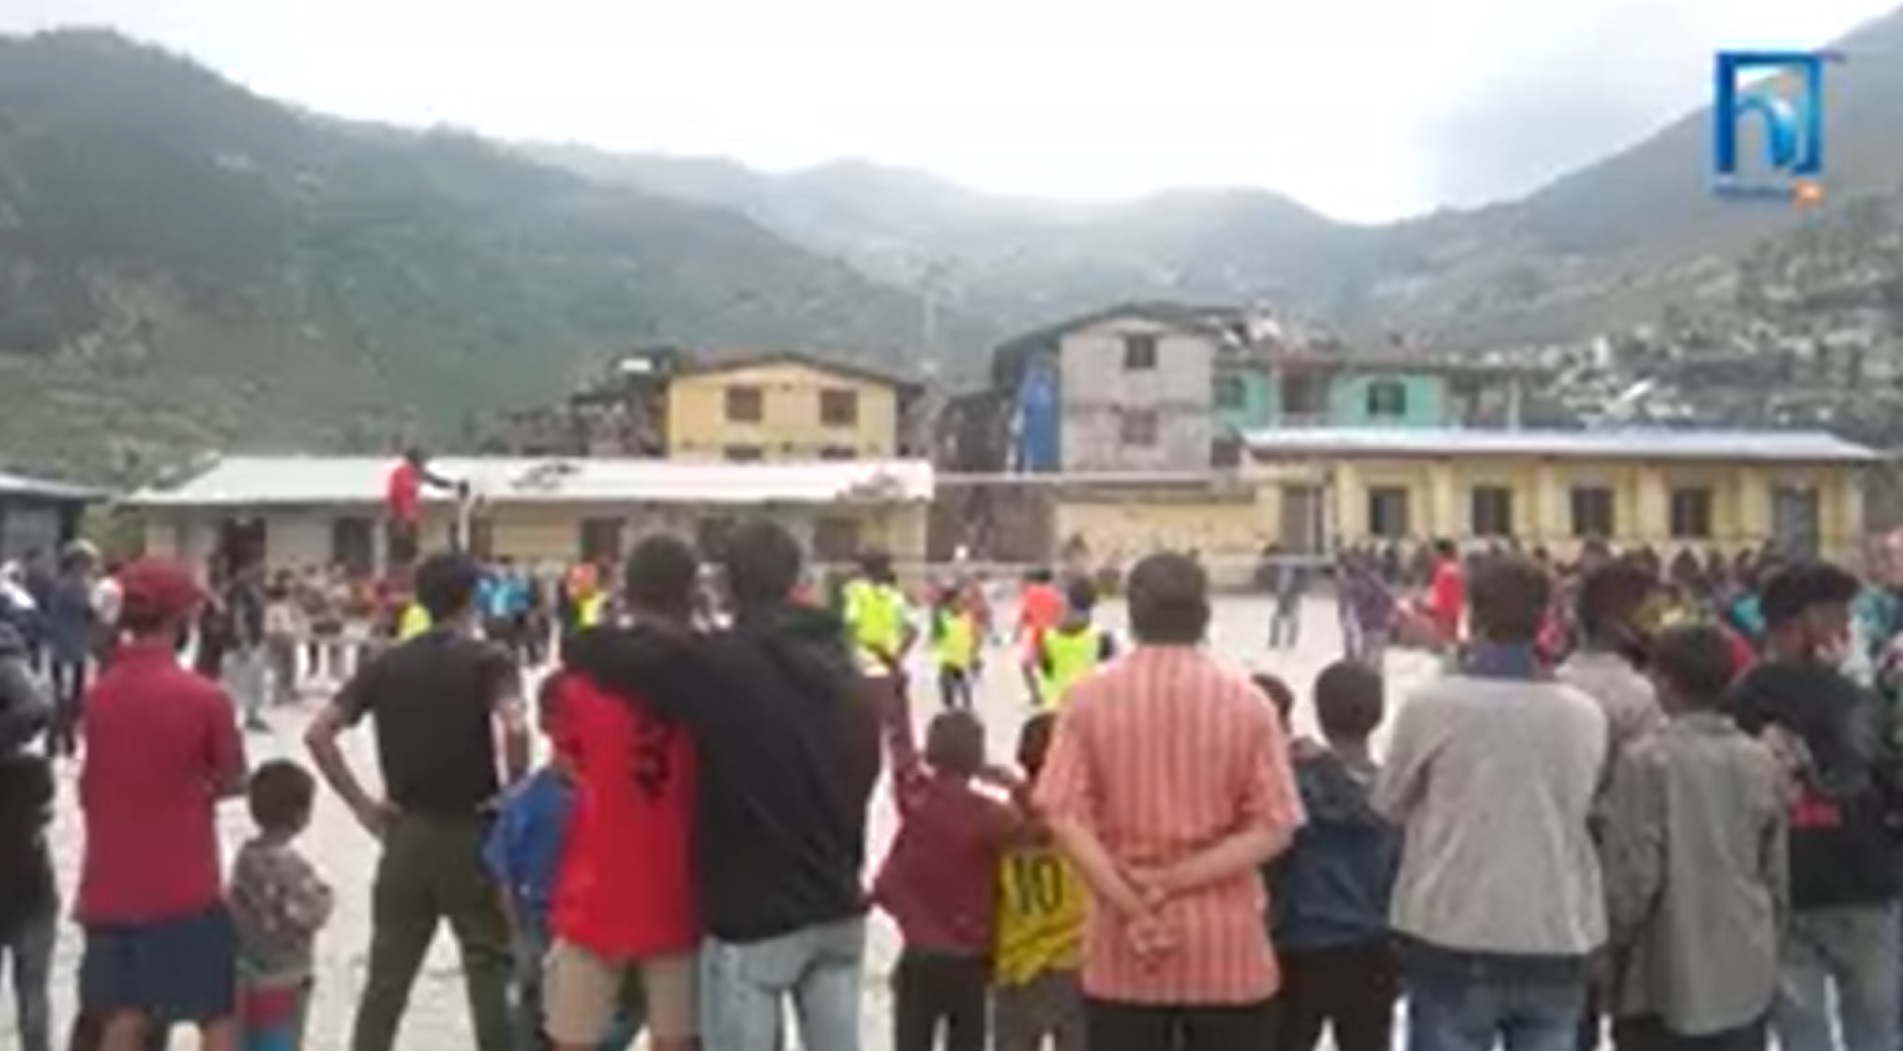 गमगढीमा खेल मैदान नहुँदा विद्यालय बन्द गरेर खेलकुद कार्यक्रम सञ्चालन (भिडियो रिपोर्टसहित)